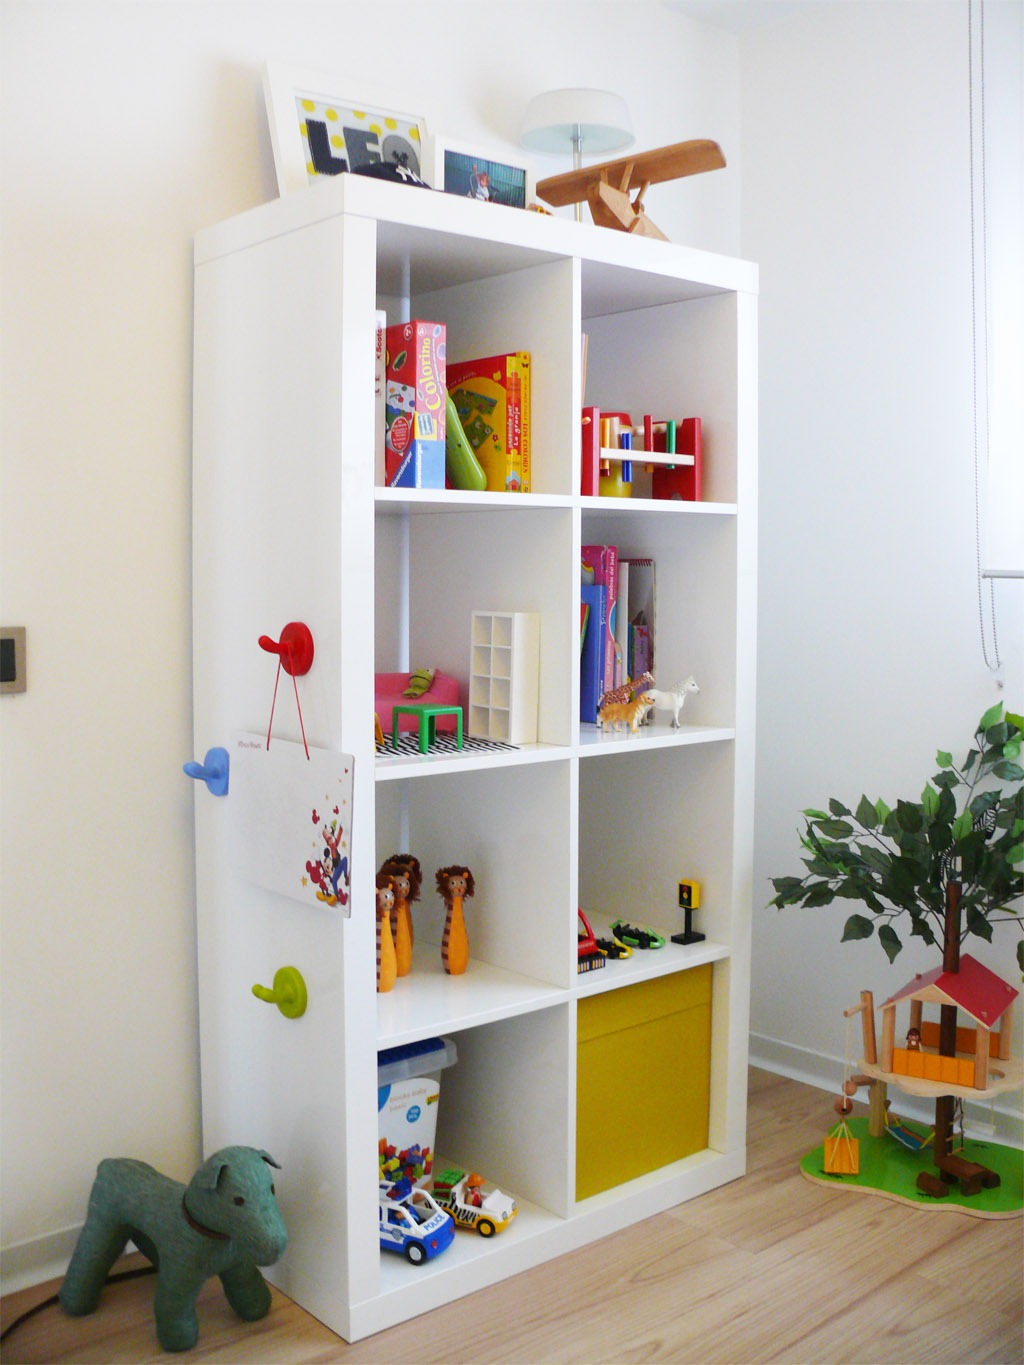 Dormitorios infantiles, ideas para decorarlos - rutchicote